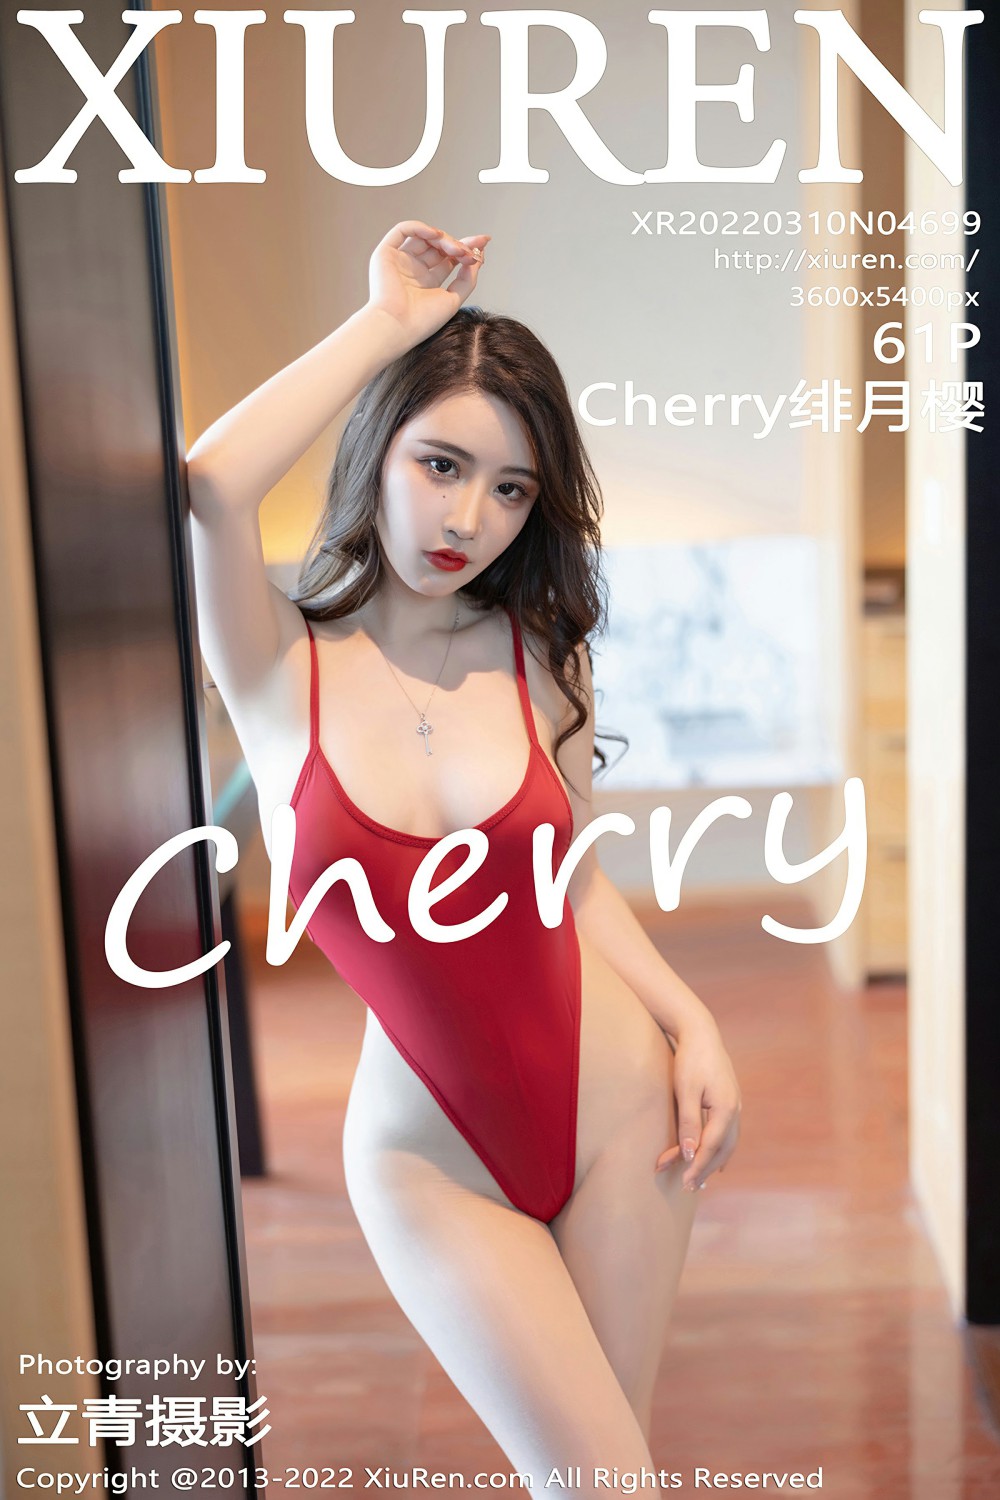 [XiuRen秀人网] 2022.03.10 No.4699 Cherry绯月樱 红色吊带 [61+1P]-第1张图片-宅男套图吧